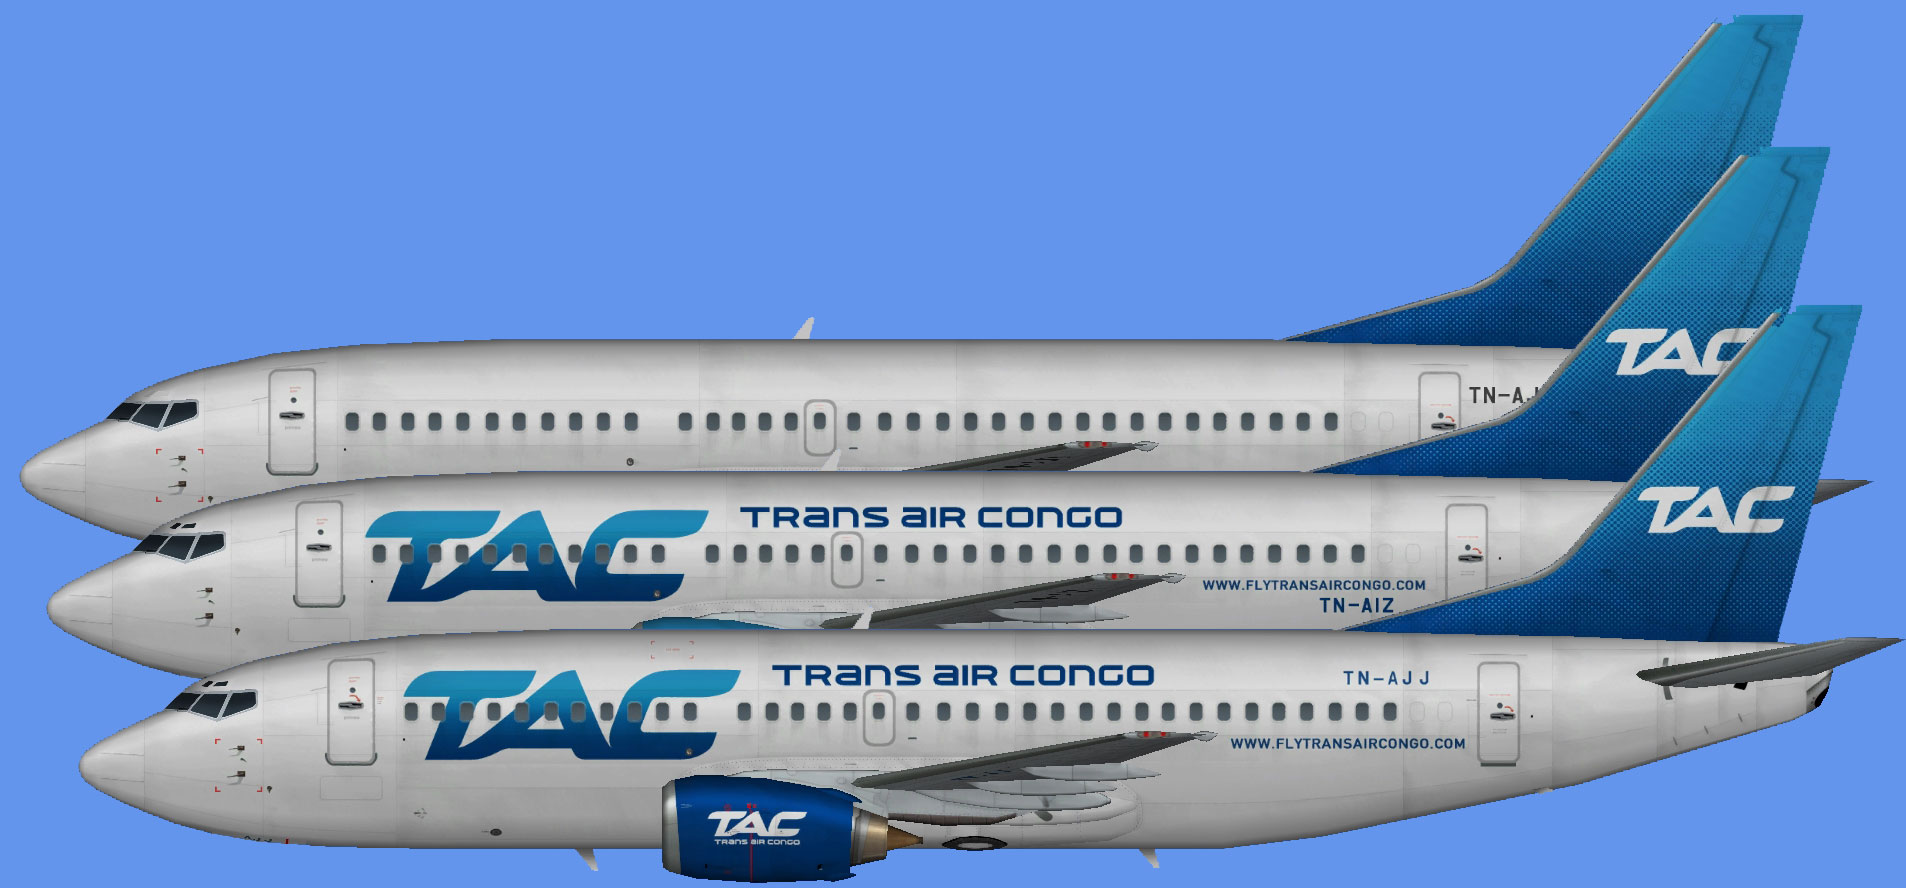 Trans Air Congo Boeing 737-300